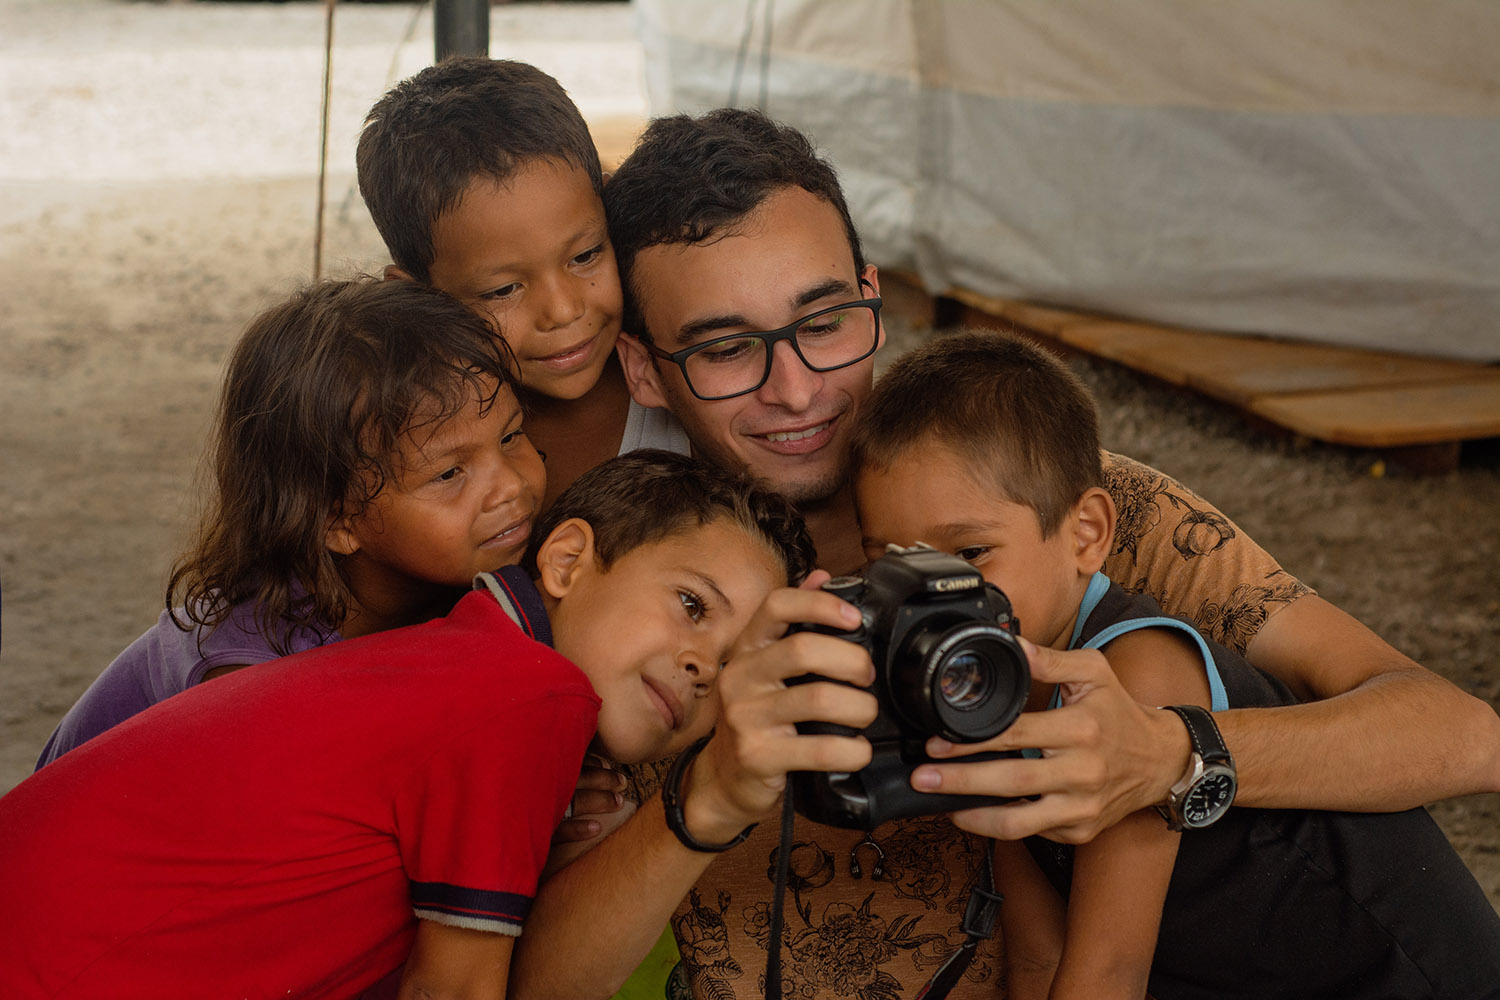 Integrante do projeto Estórias Migrantes com crianças venezuelanas em abrigo de Boa Vista: equipe compartilha experiências com a comunidade de migrantes (Foto: Kataryna Górka)